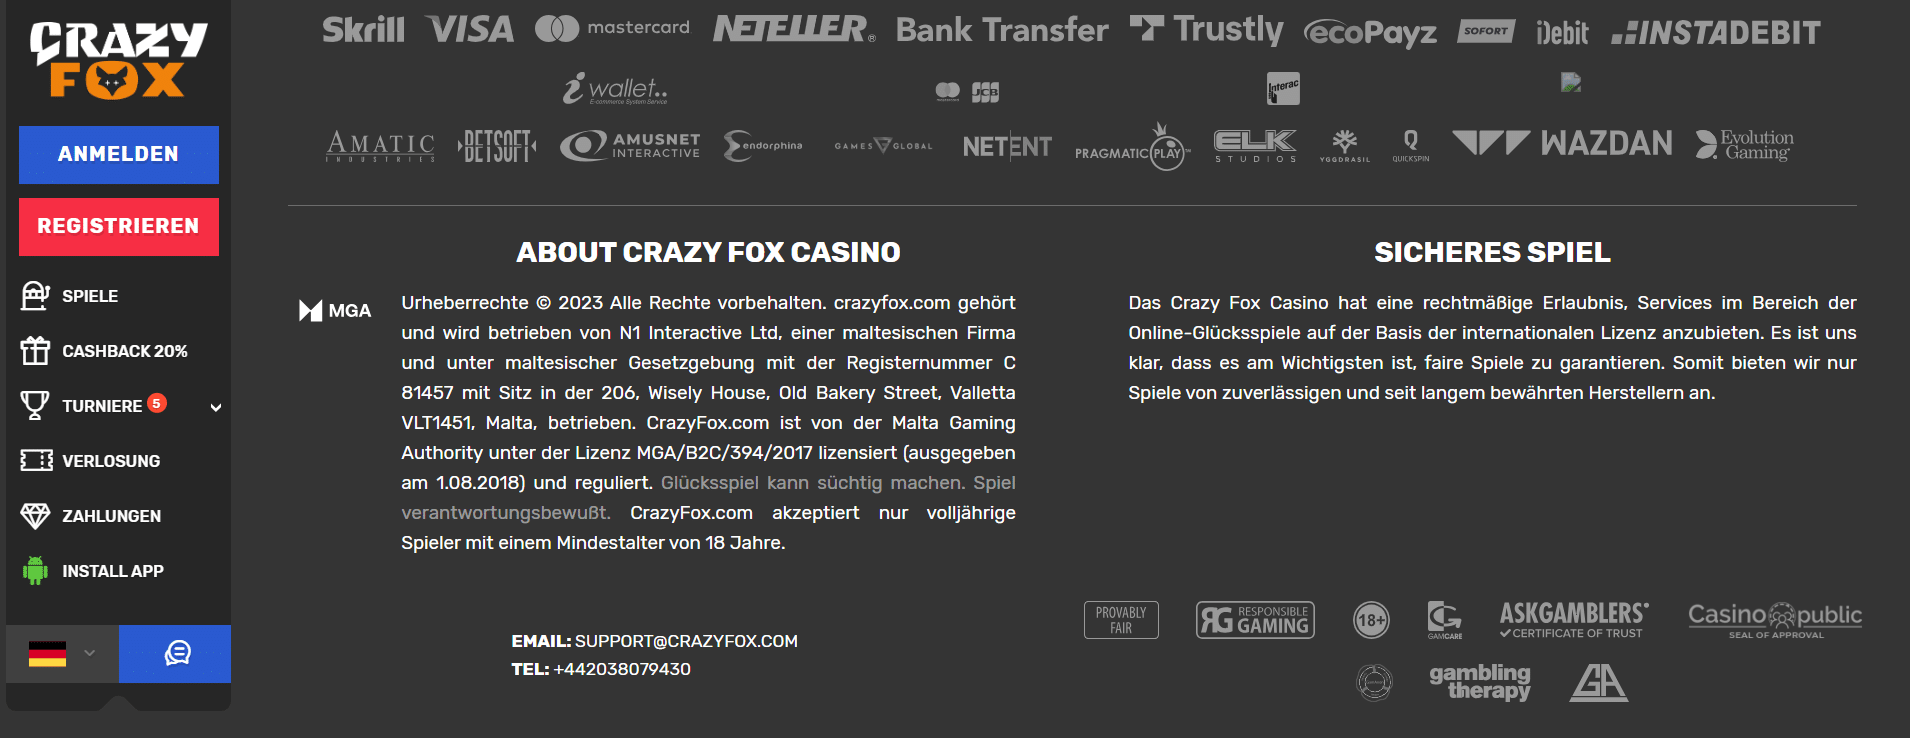 Crazy Fox Casino Über